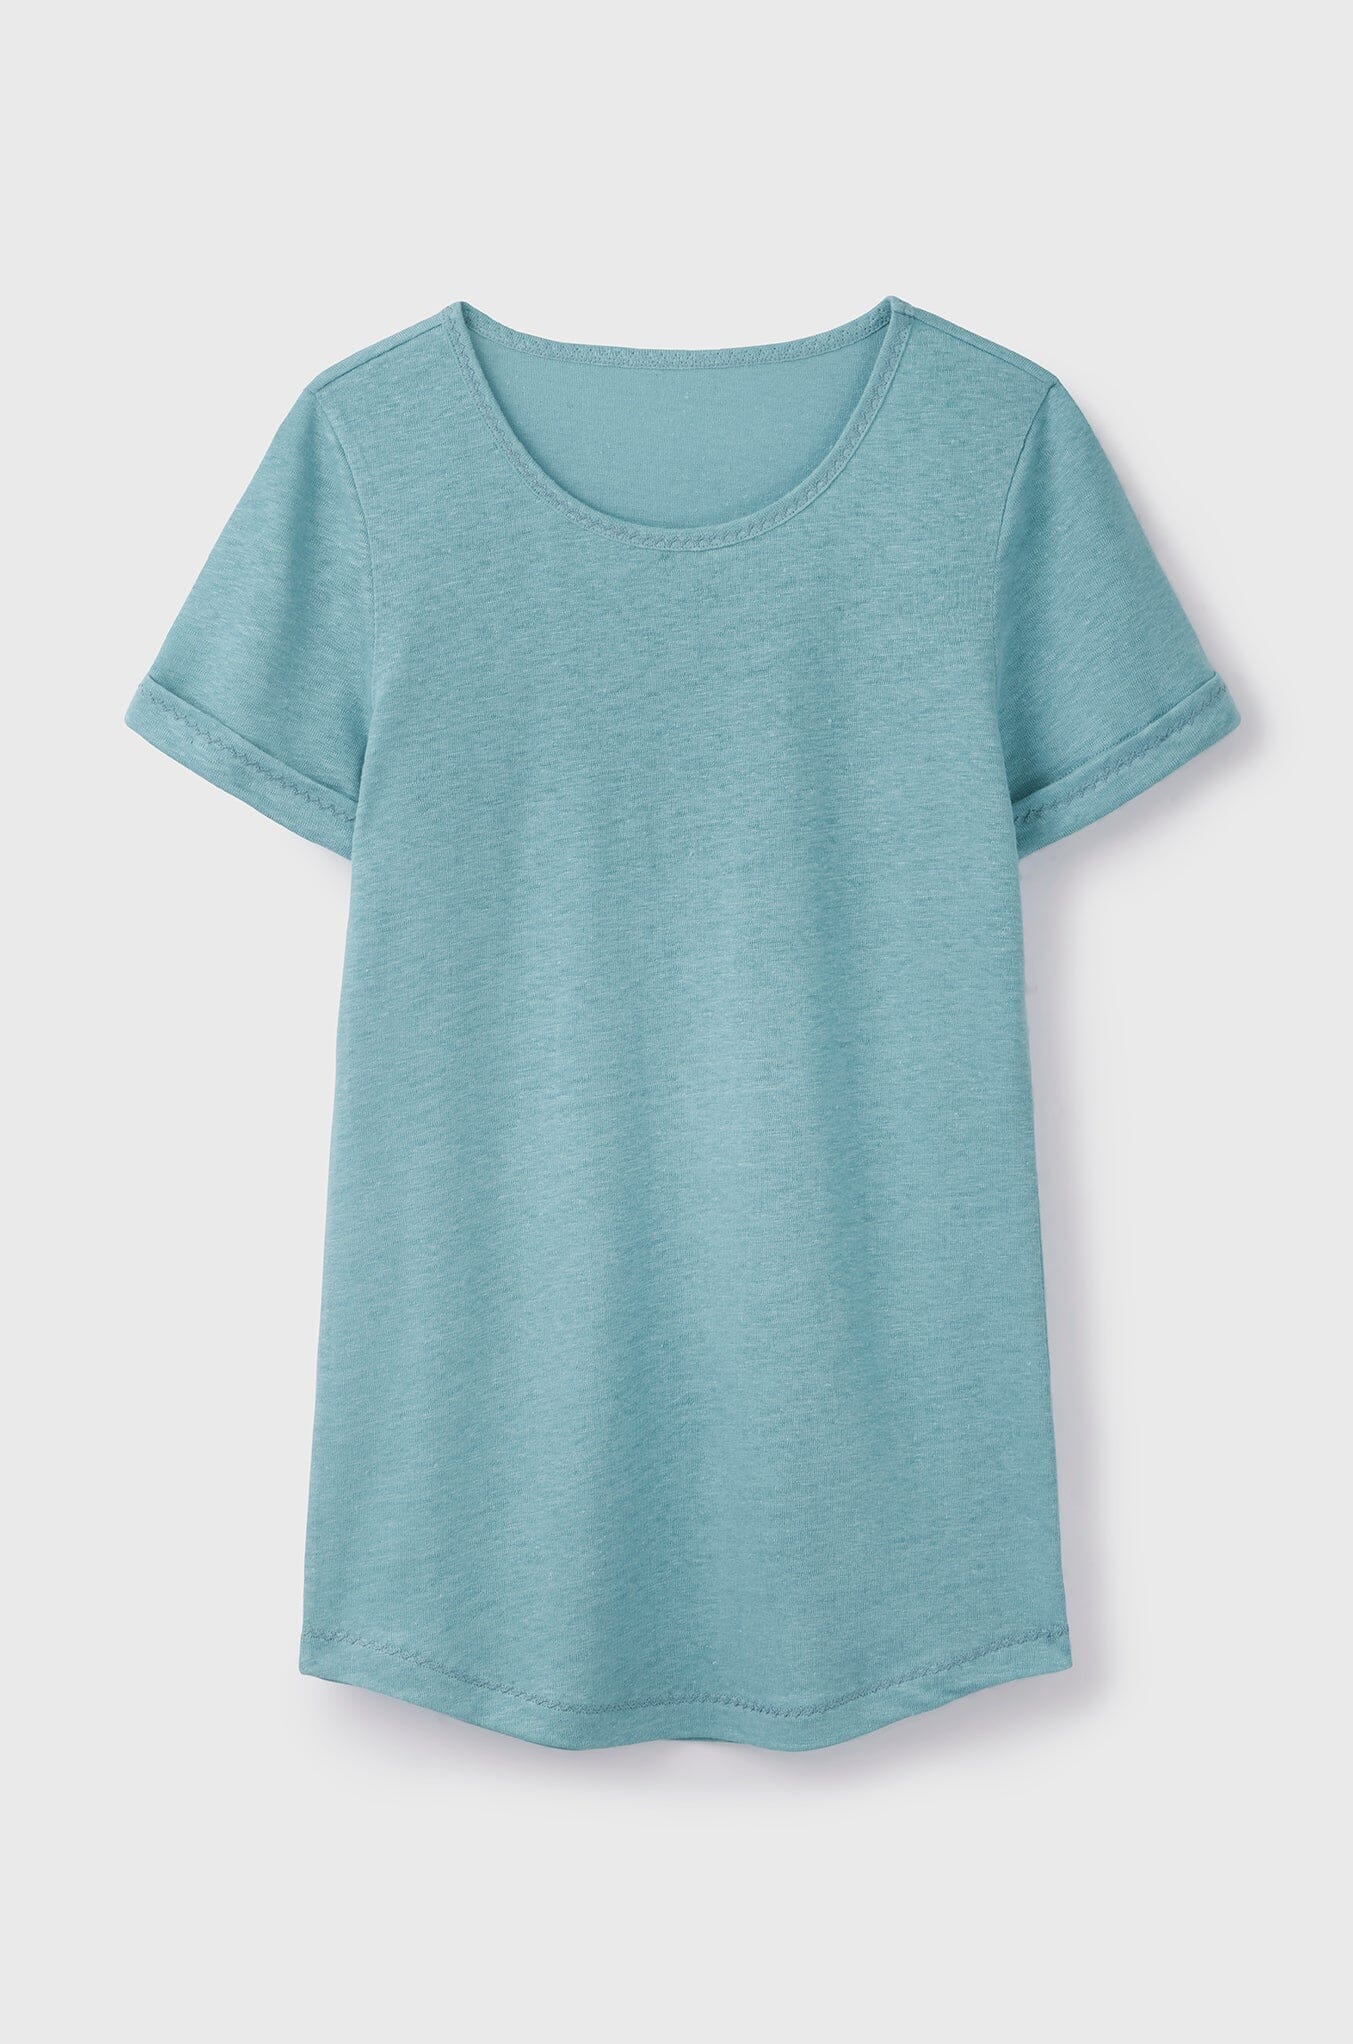 Sea blue womens Linen T-shirt | Quality Women's Short Sleeve Linen T-shirt by Lavender Hill